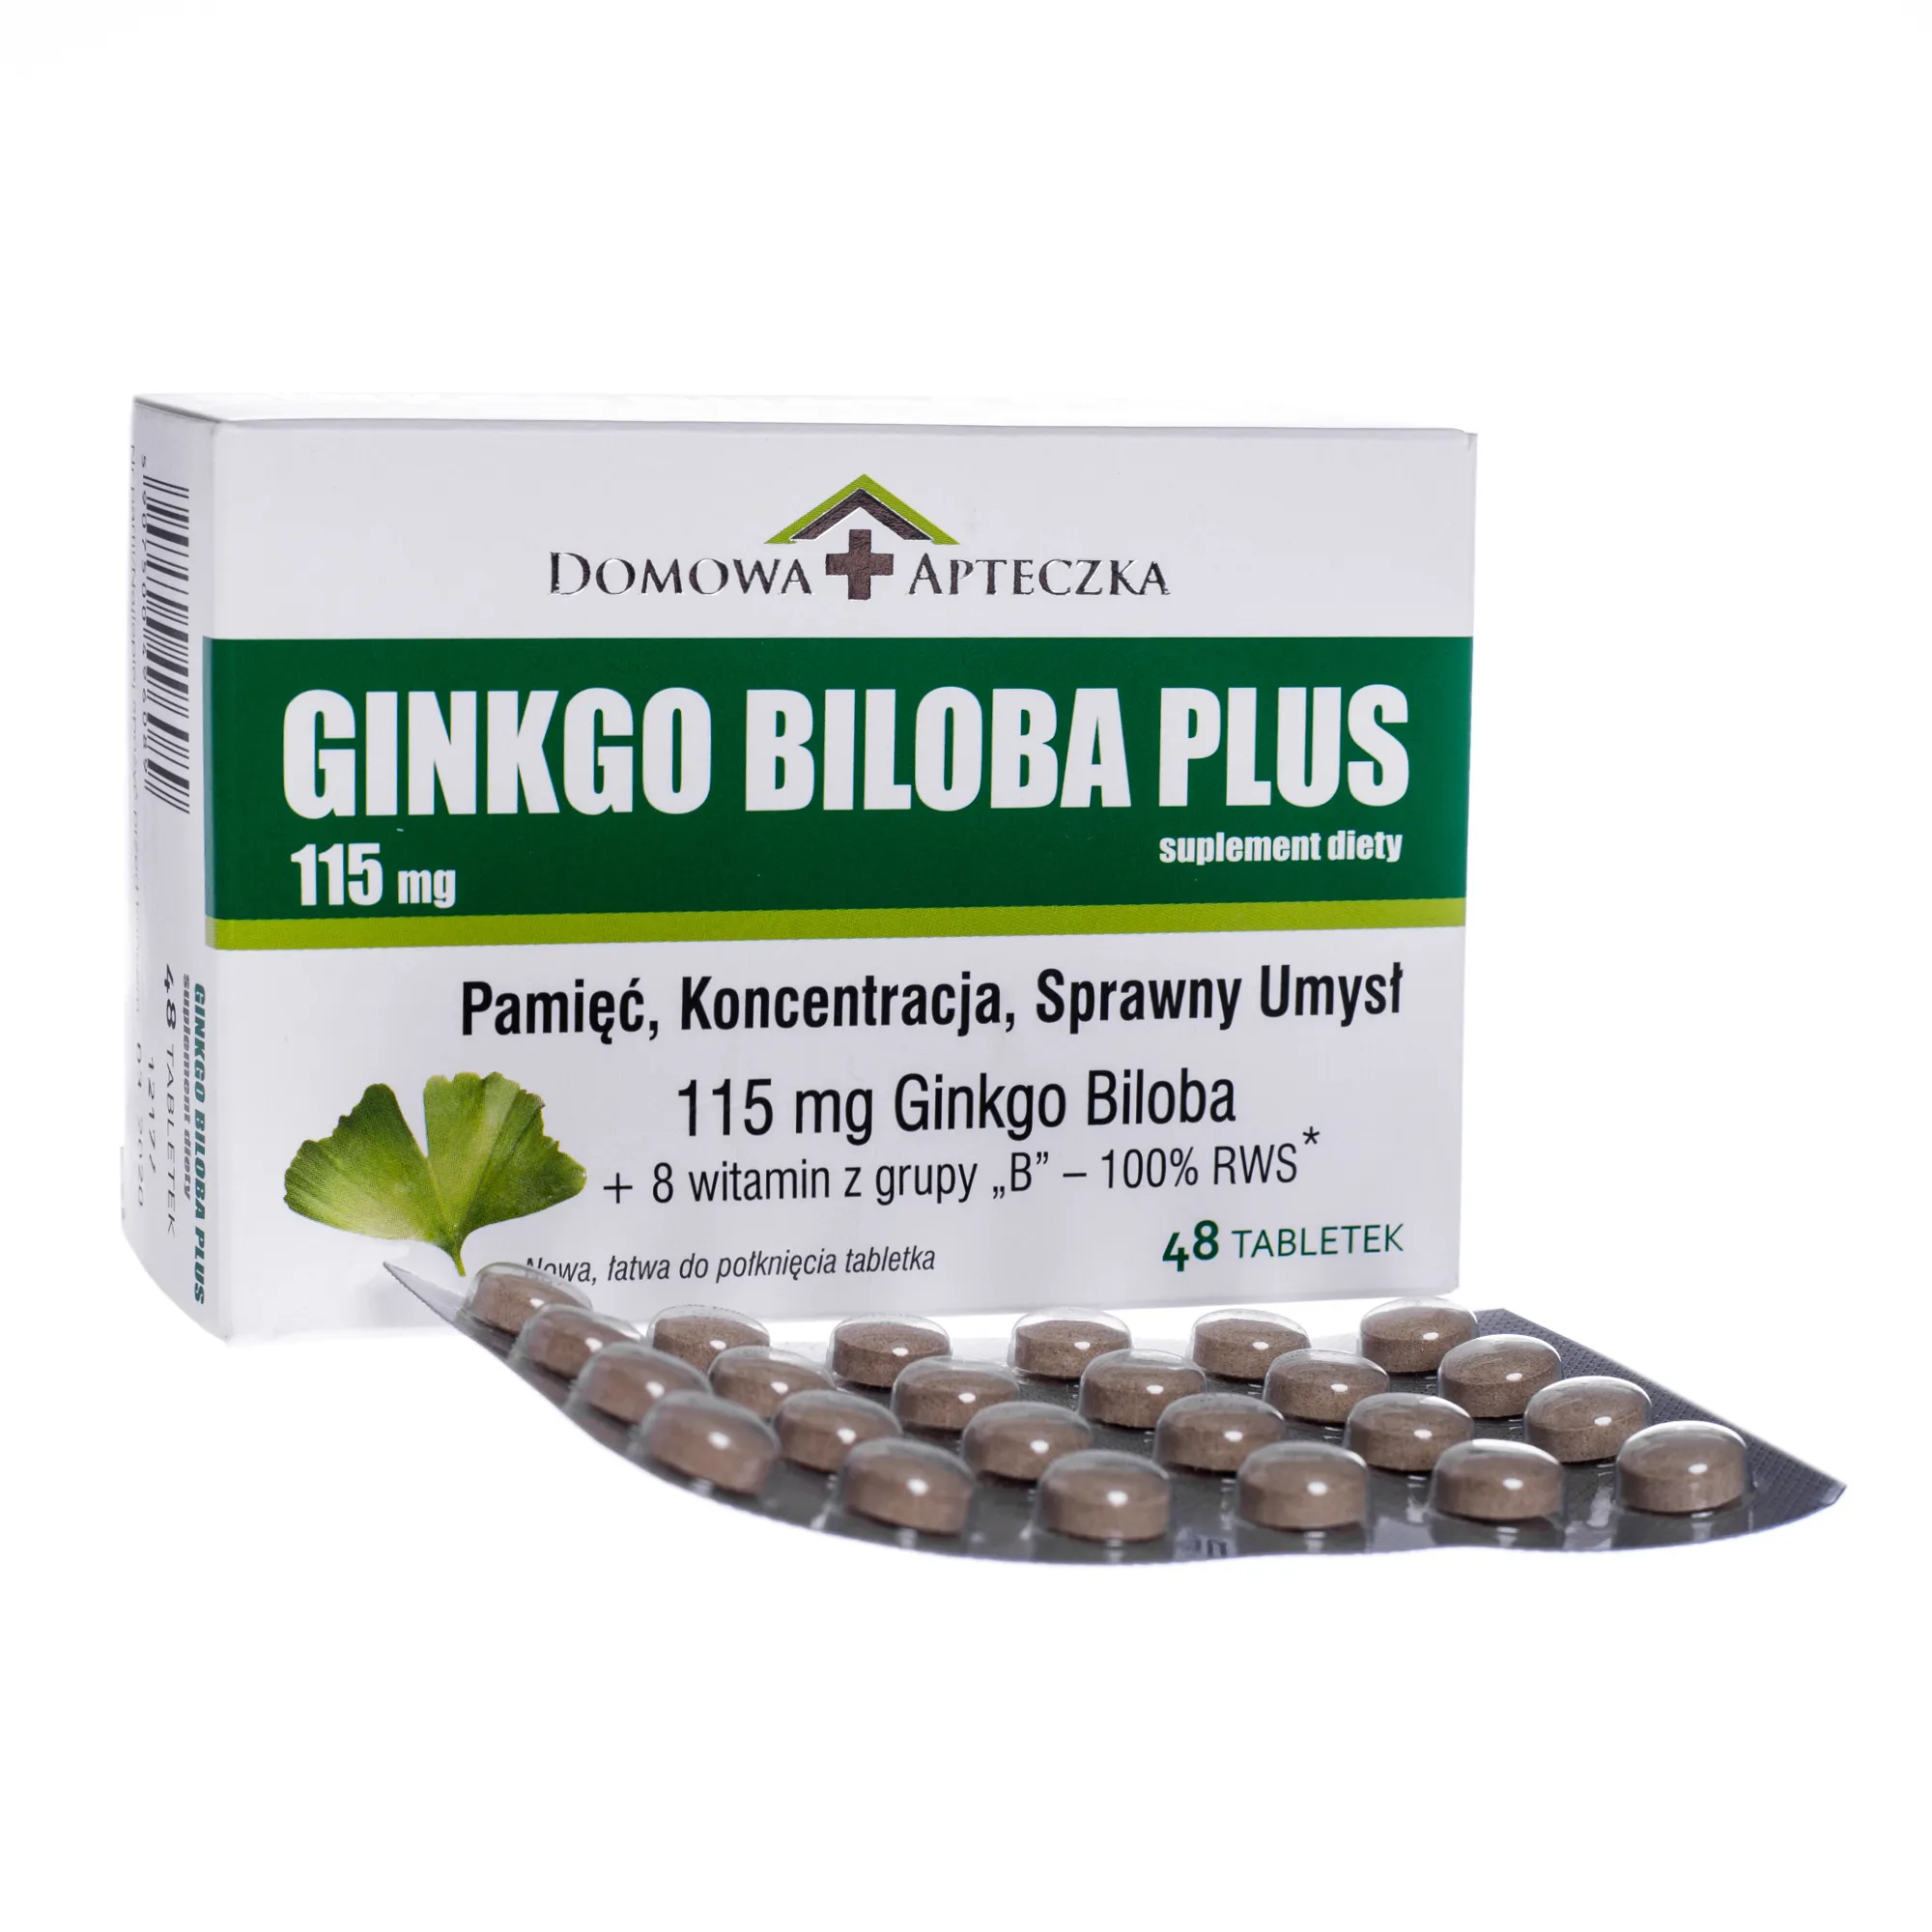 Ginkgo Biloba Plus, suplement diety, 48 tabletek 